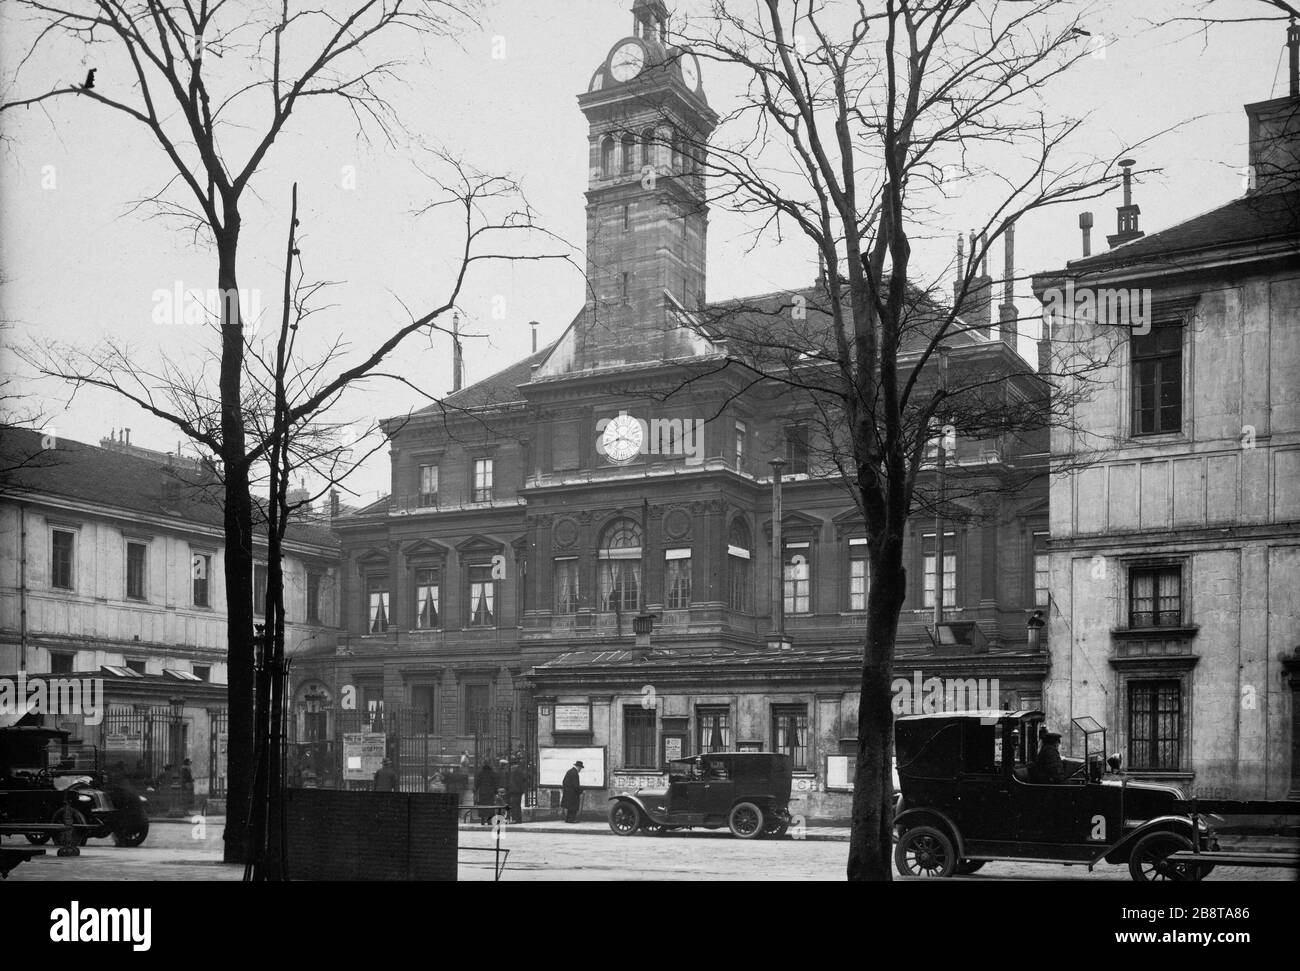 18 RUE DES BATIGNOLLES rue des Batignolles numéro 18. Paris (XVIIème arr.). Photo de Charles Lansiaux (1855-1939). Paris, musée Carnavalet. Banque D'Images